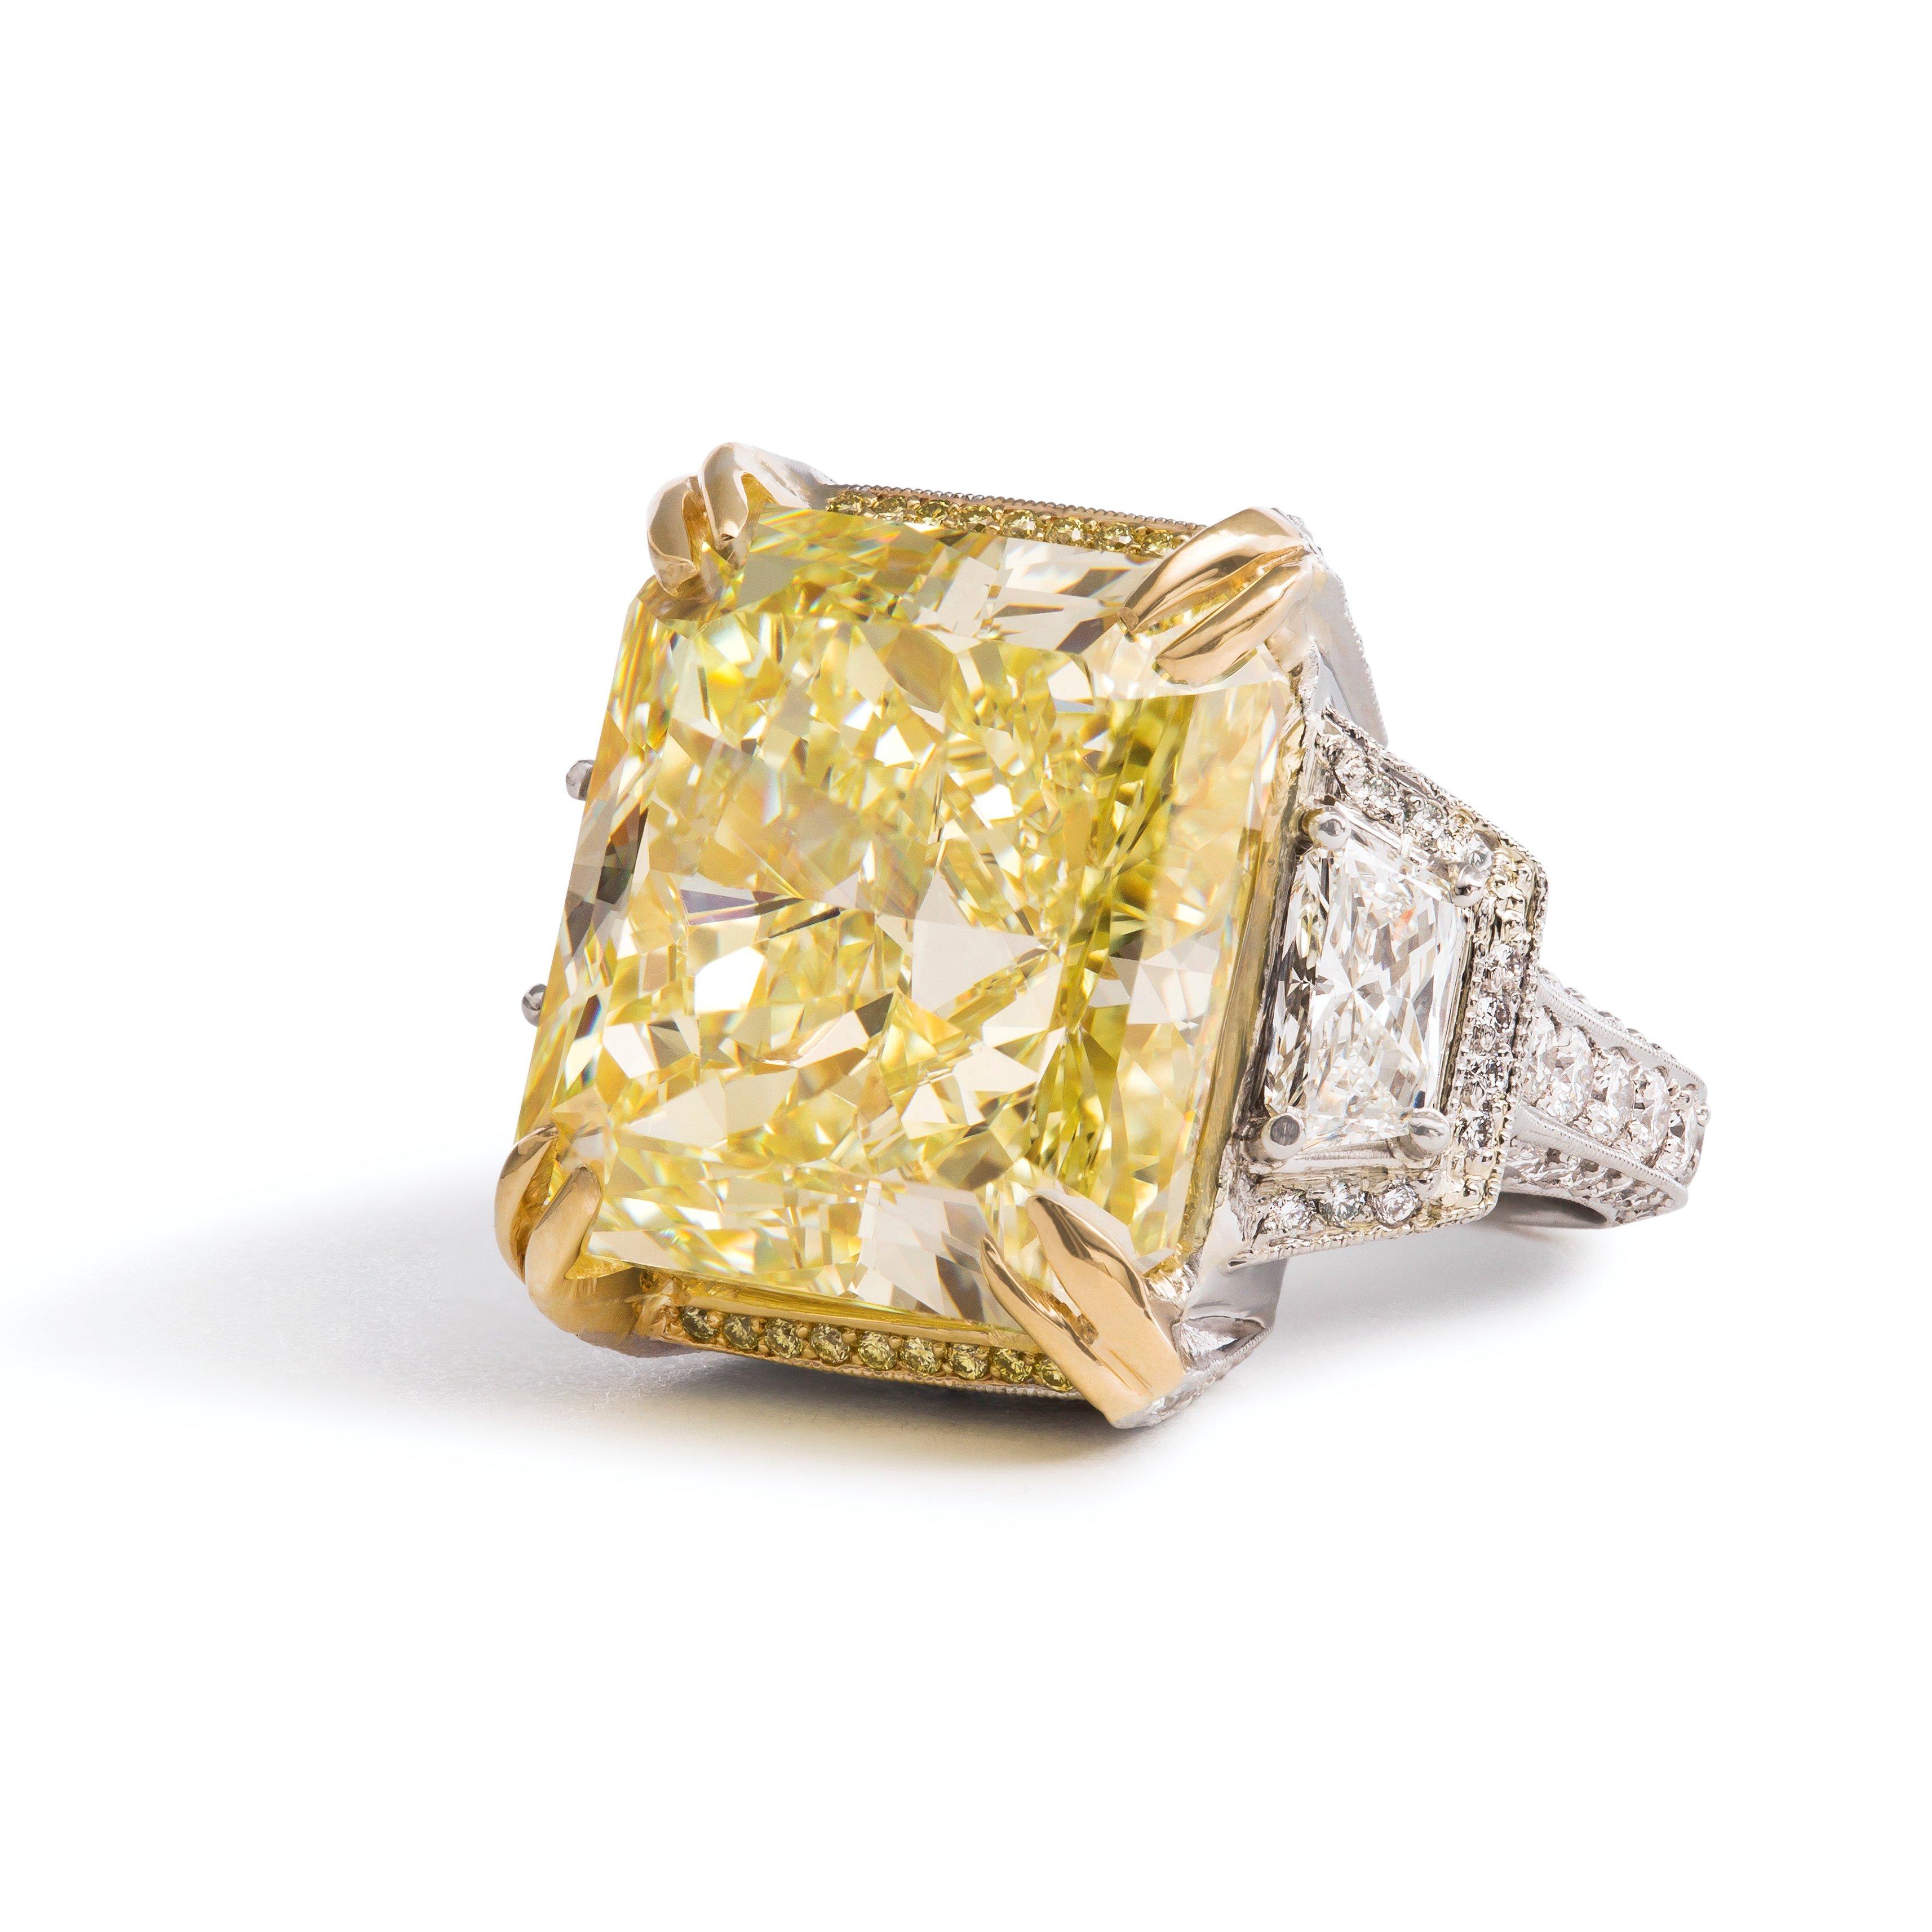 Michael Beaudry 21,57 ct. gelber Diamantring mit Strahlenschliff aus Platin und 18 Karat Gelbgold.

Das Herzstück dieses auffälligen Rings ist ein 21,57 Karat schwerer gelber Diamant im Brillantschliff mit der Reinheit VS1, der von einem